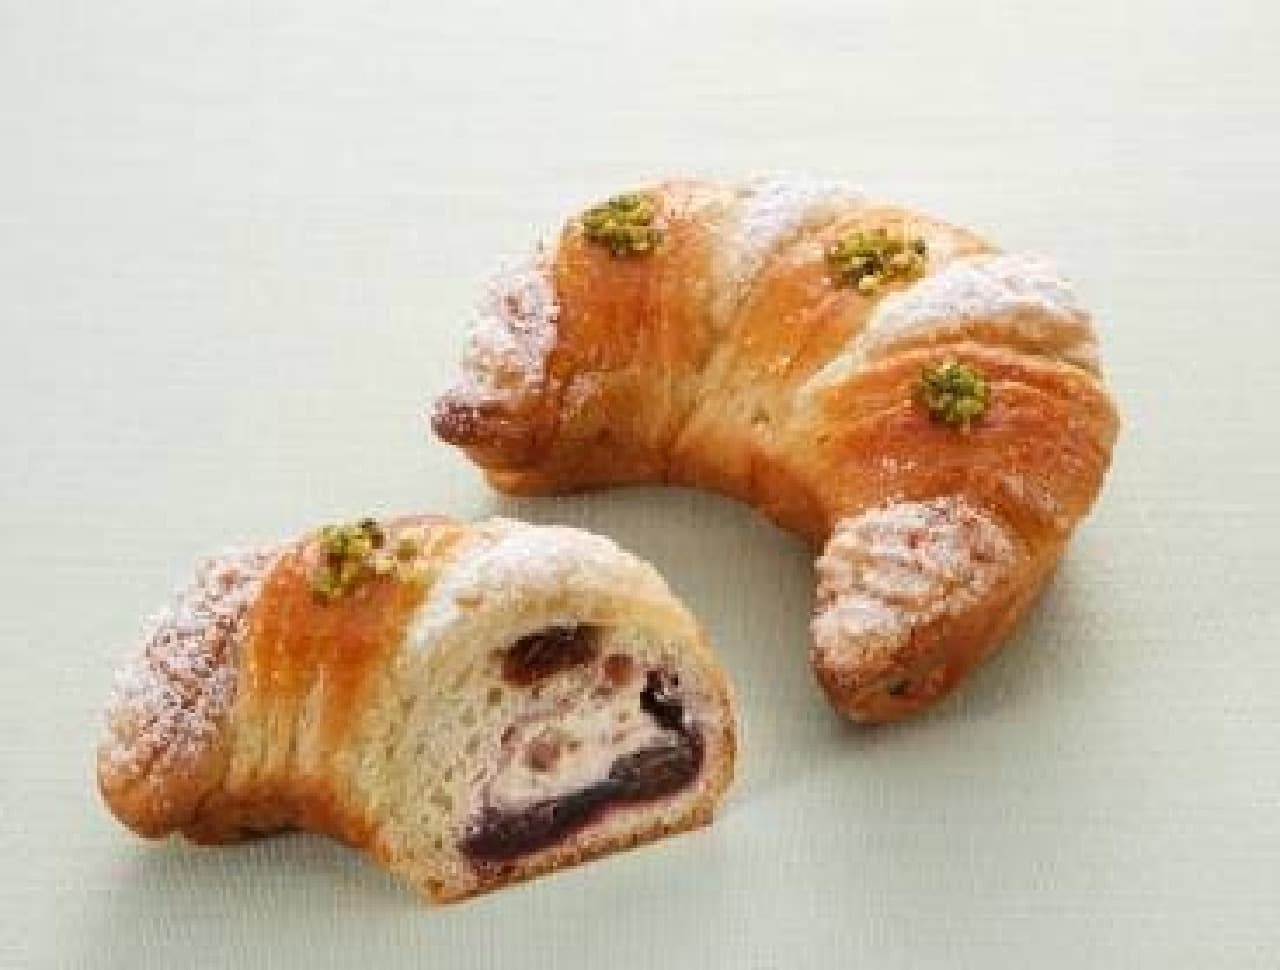 Crescent-shaped raisin bread